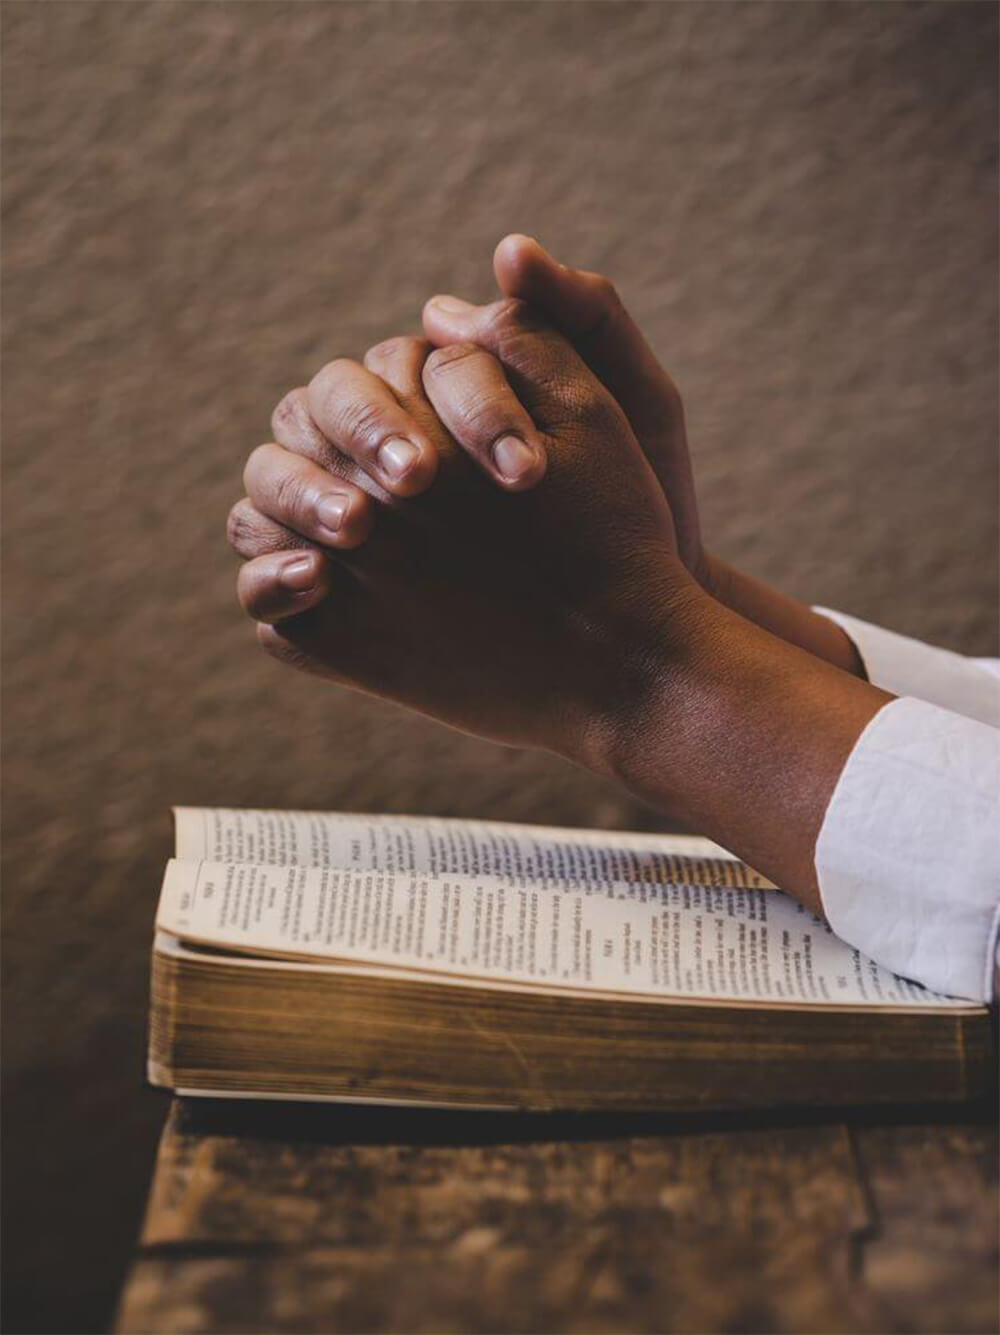 Should You Recite the "Sinner’s Prayer"? – Gerald E. Weston